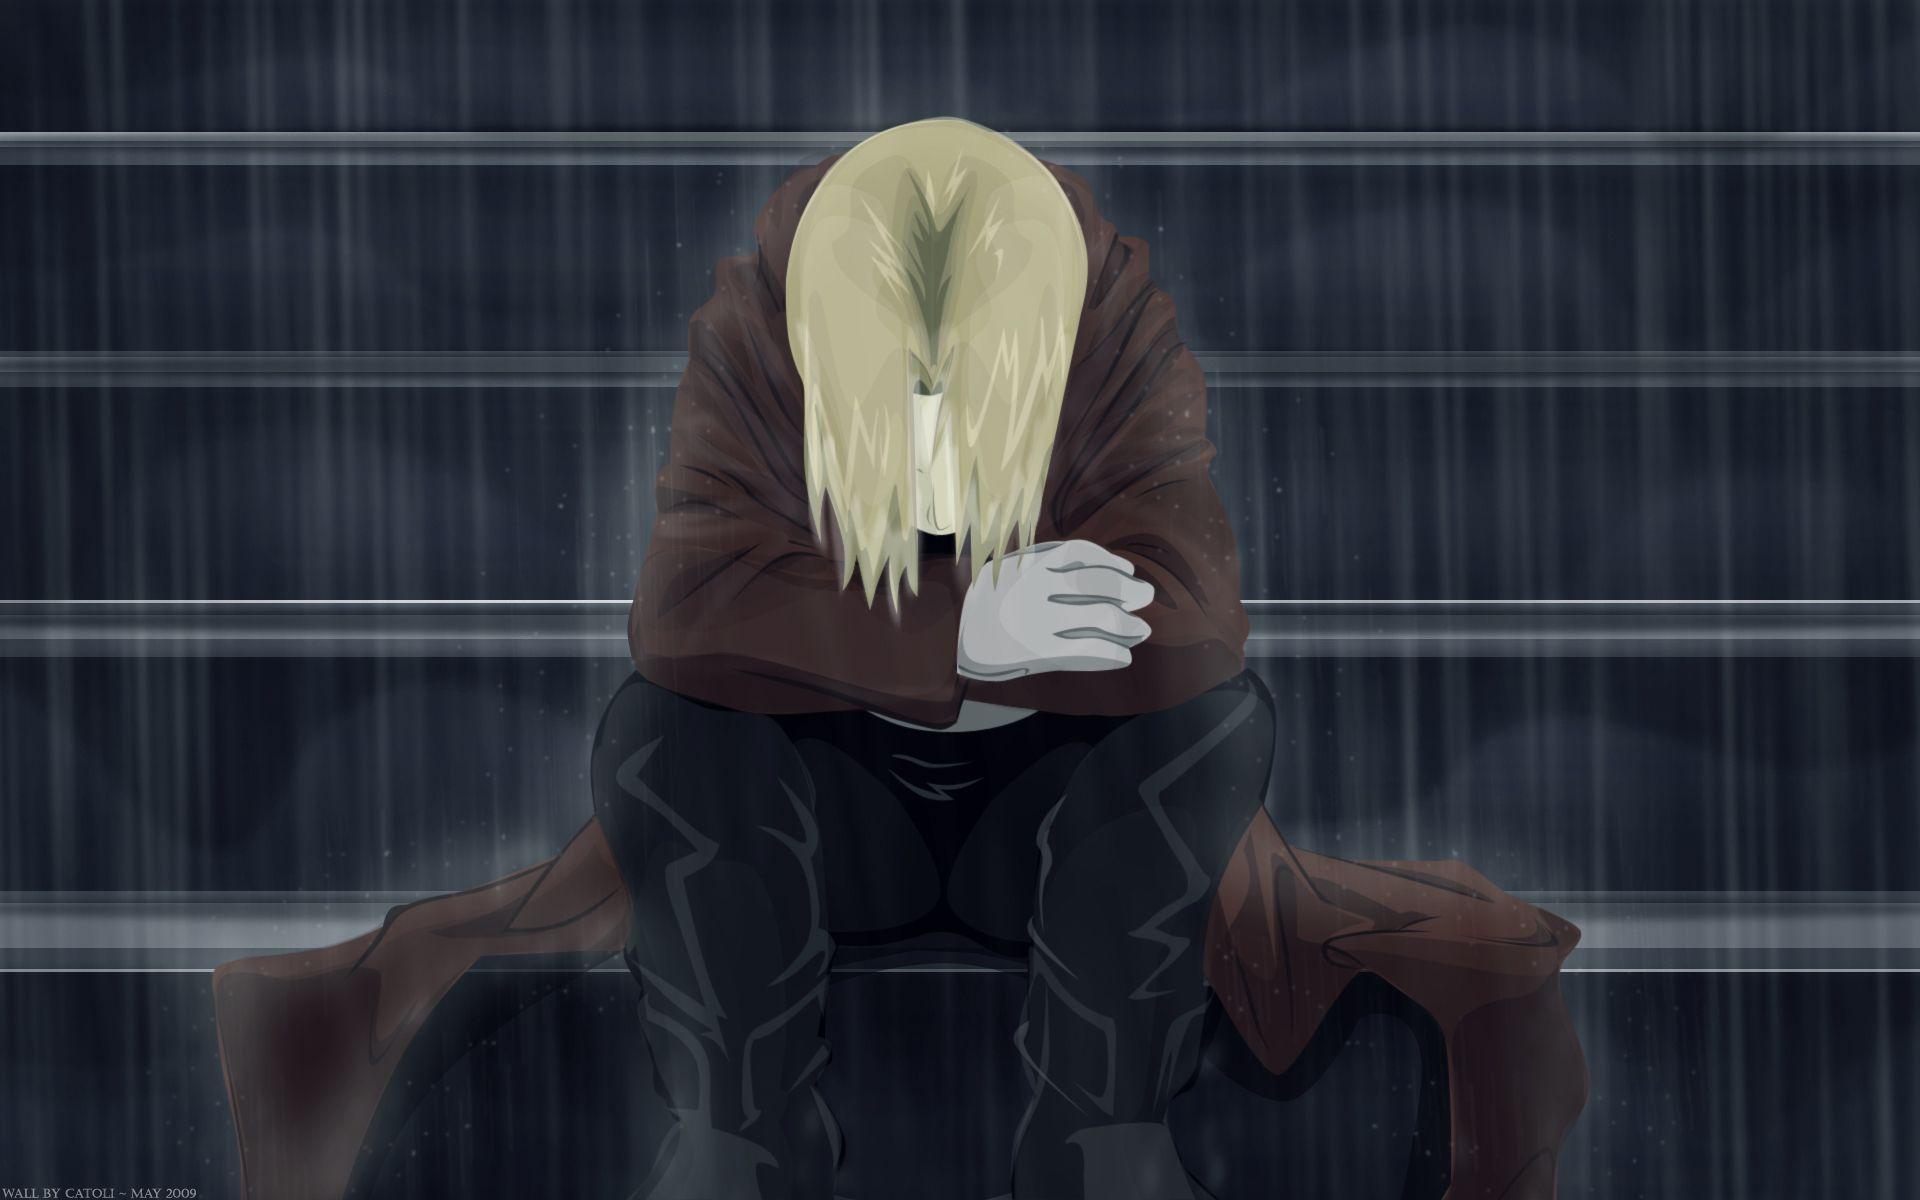 Rain Sad Anime Wallpapers Top Free Rain Sad Anime Backgrounds